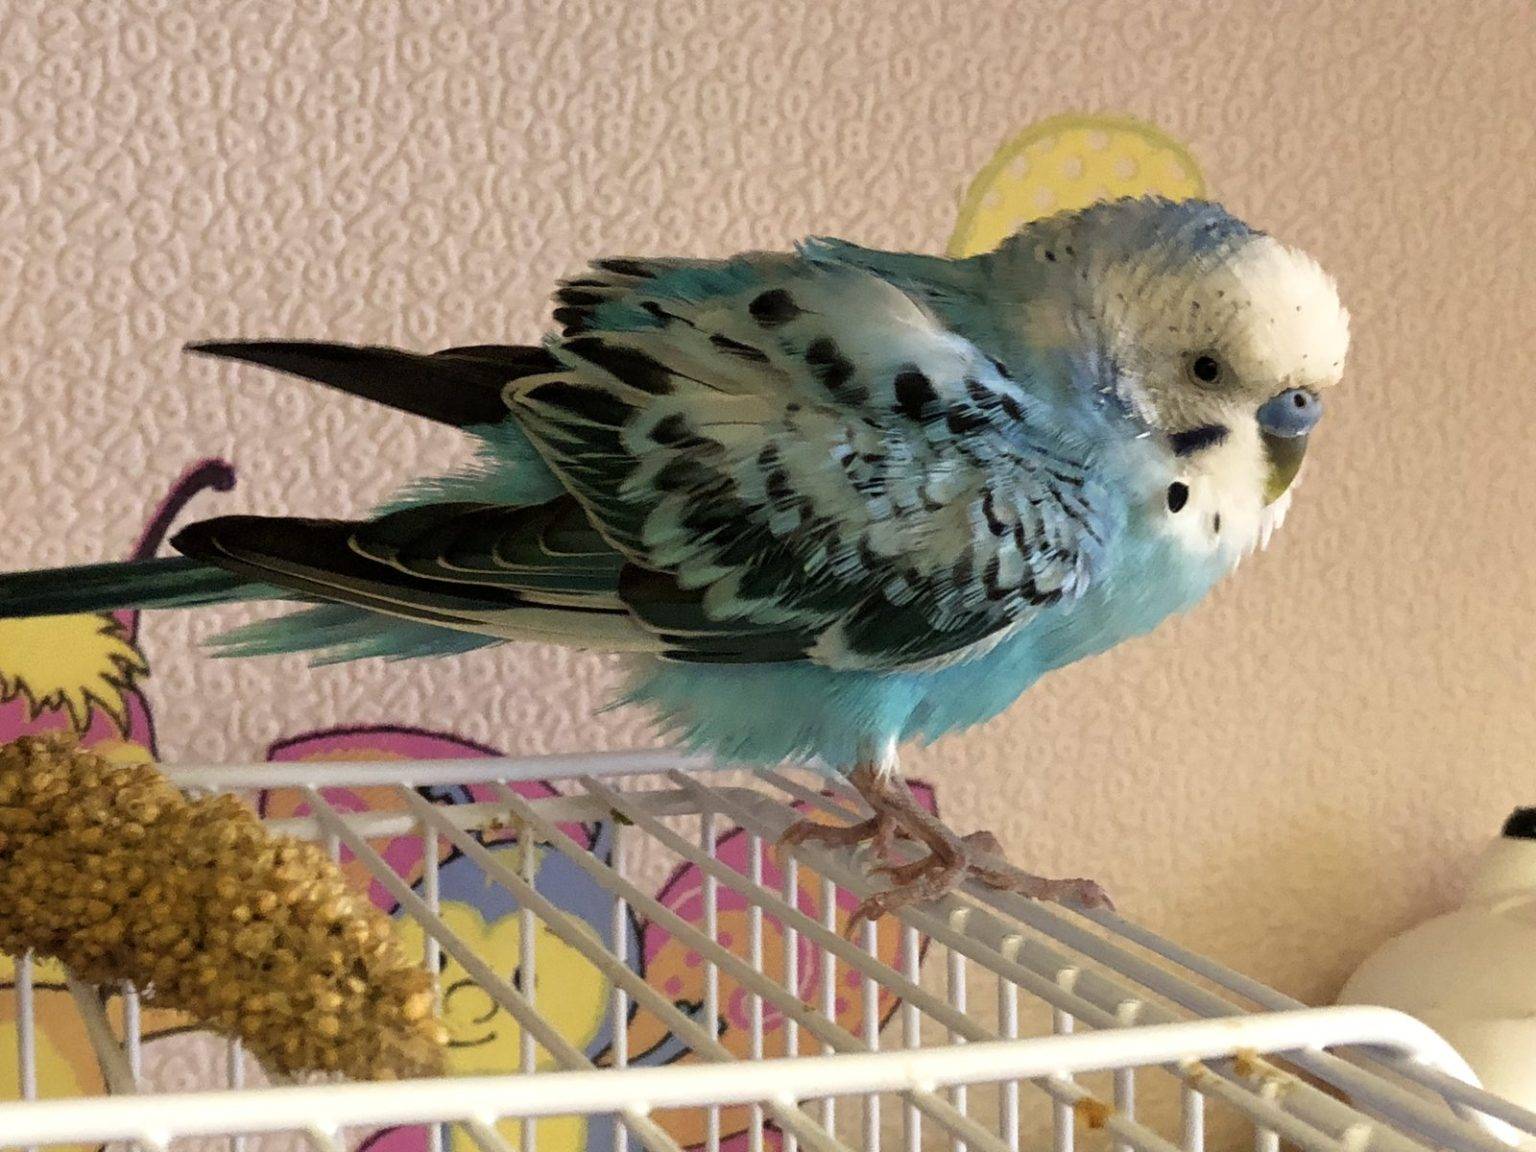 Болезни попугаев породы корелла: симптомы, диагностика и лечение недуга